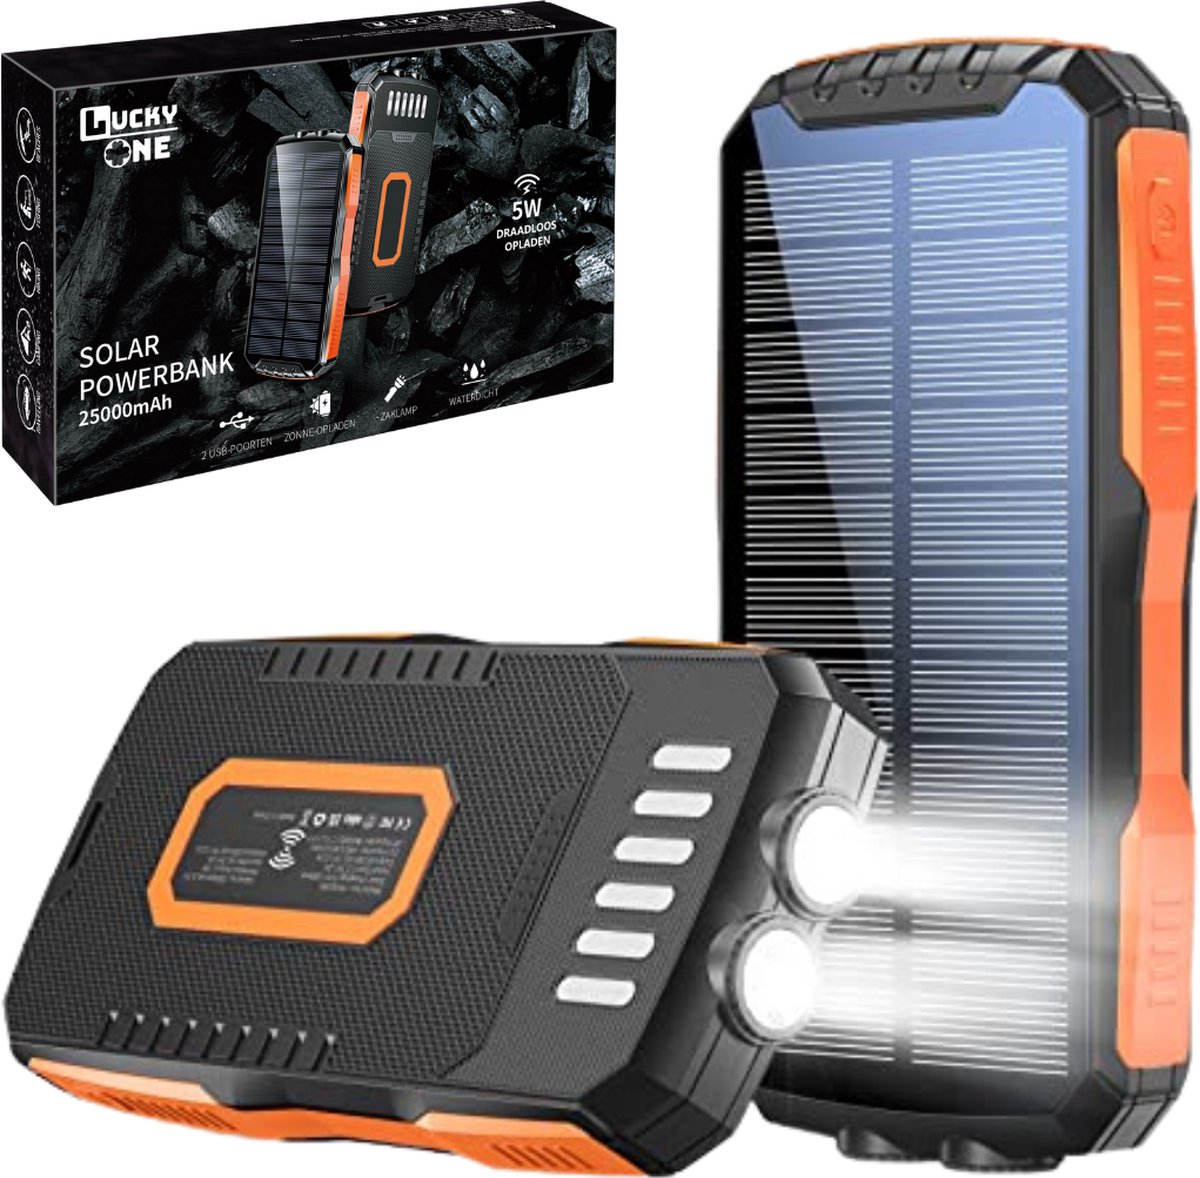 Lucky One Solar powerbank met 25000 mAh batterij - Zonneenergie - Iphone en Samsung - Solar Charger - Fast Charging - USB C & Micro USB - Outdoor - Oranje